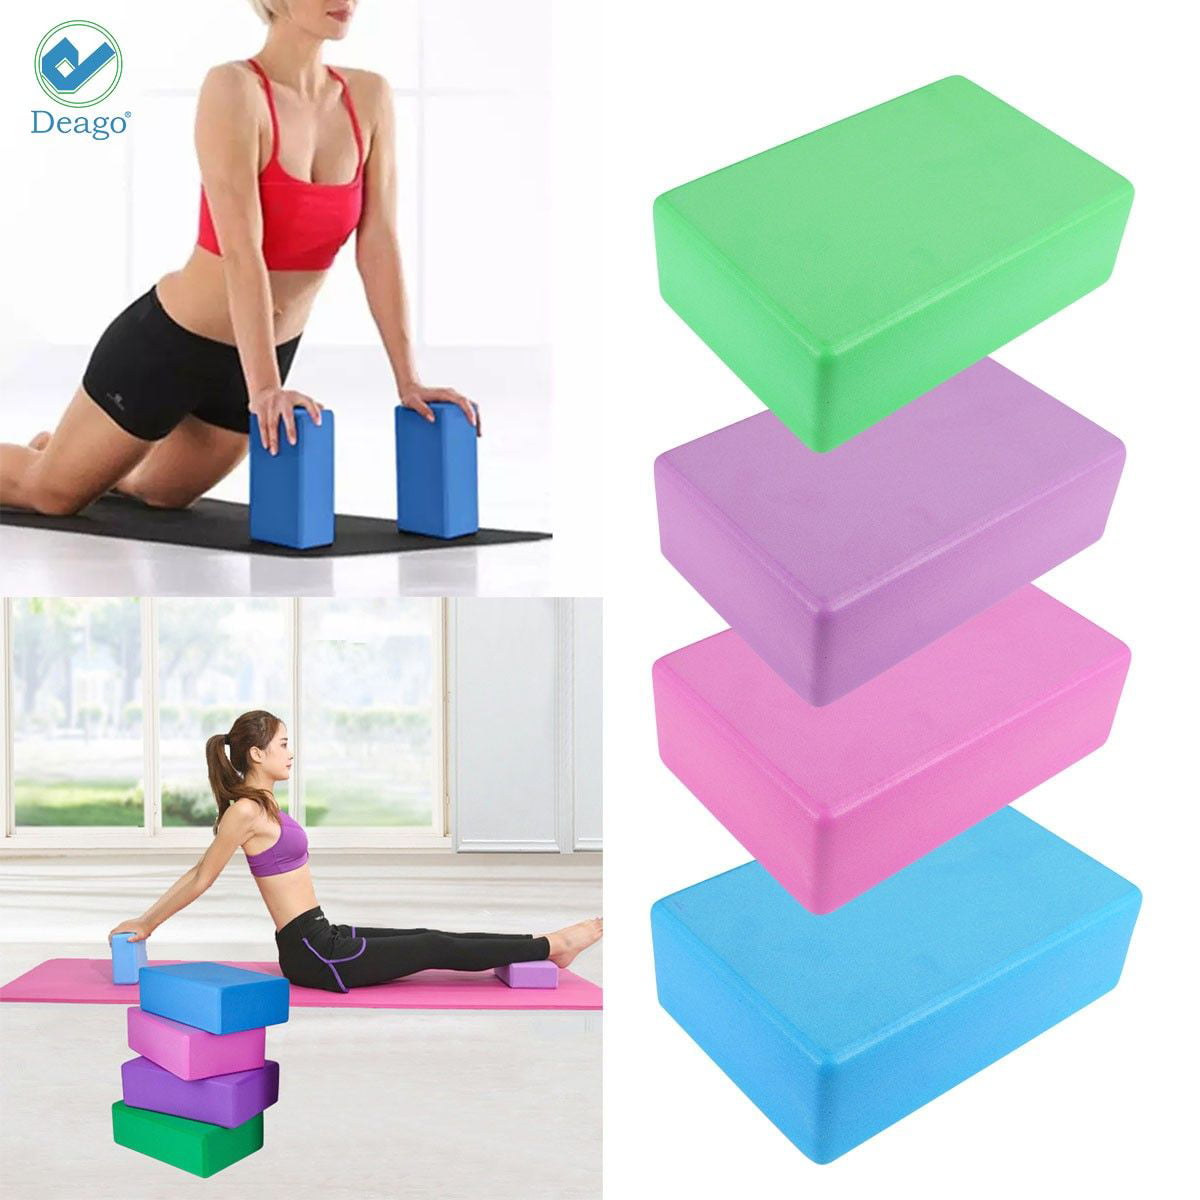 Non-slip High-density EVA Yoga Blocks Eco Friendly Exercise Fitness Sport Blocks 